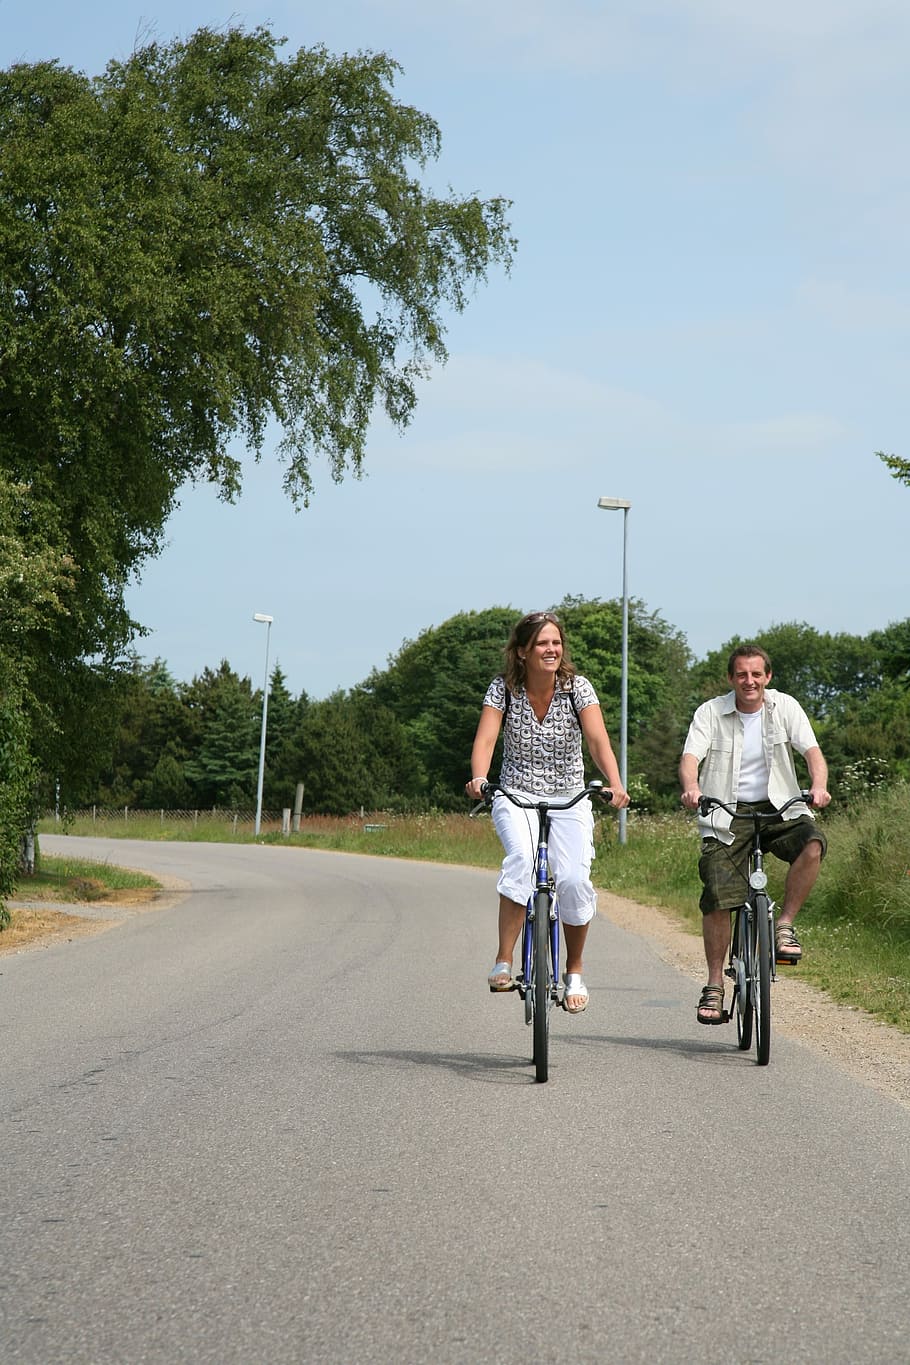 カップル, 自転車, 乗る, 夏, 道路, 家族, 一緒に, 女と男, 二人, サイクリング